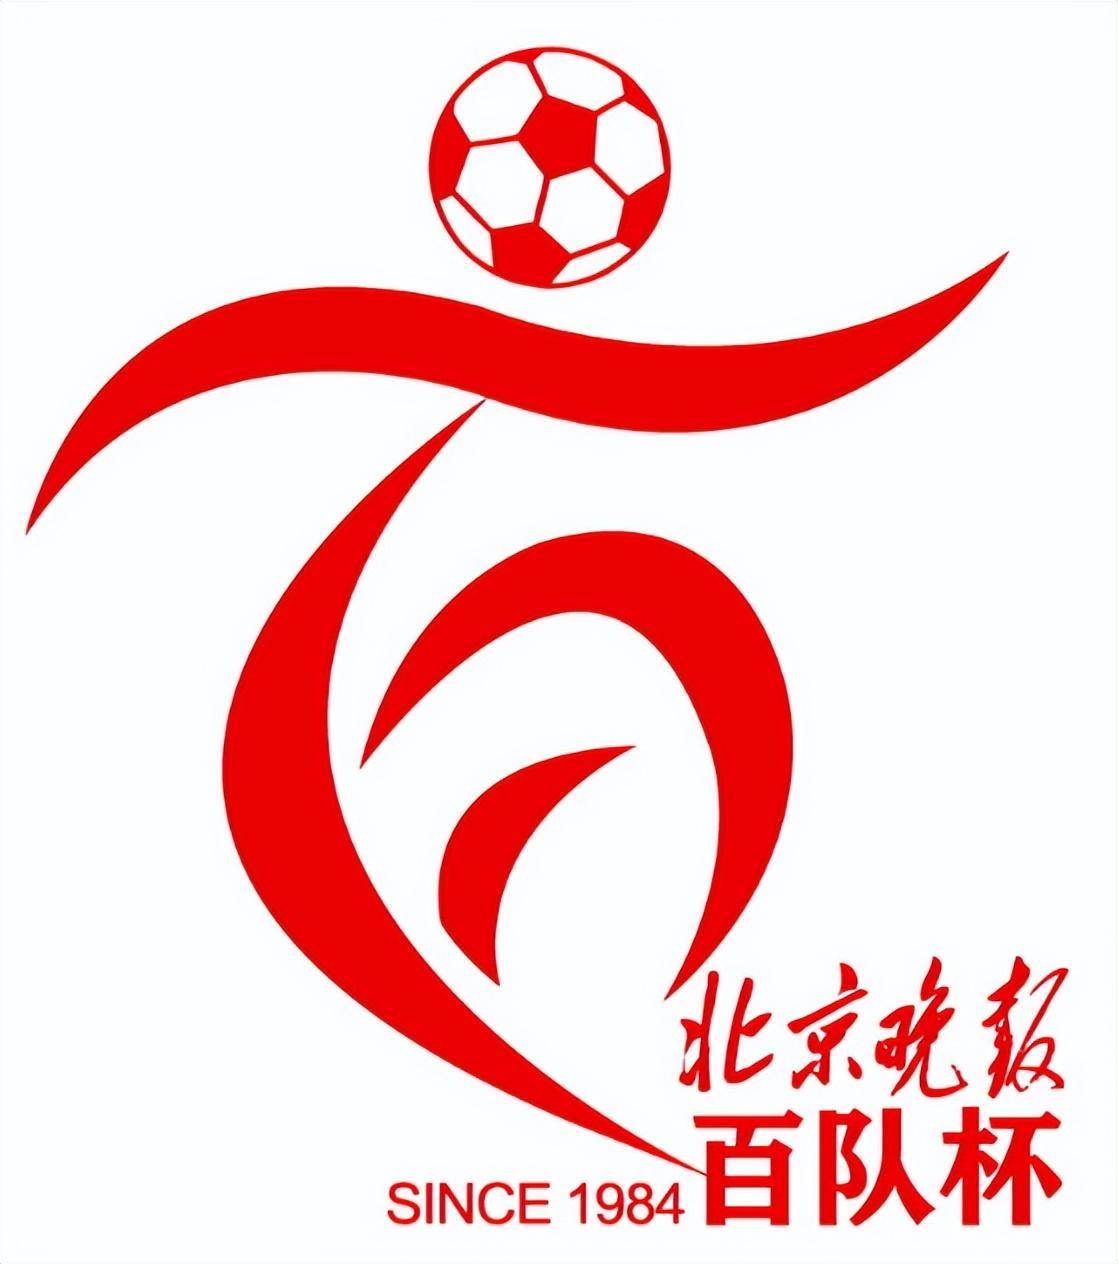 第40届北京晚报百队杯足球赛本月8号开启报名!提醒